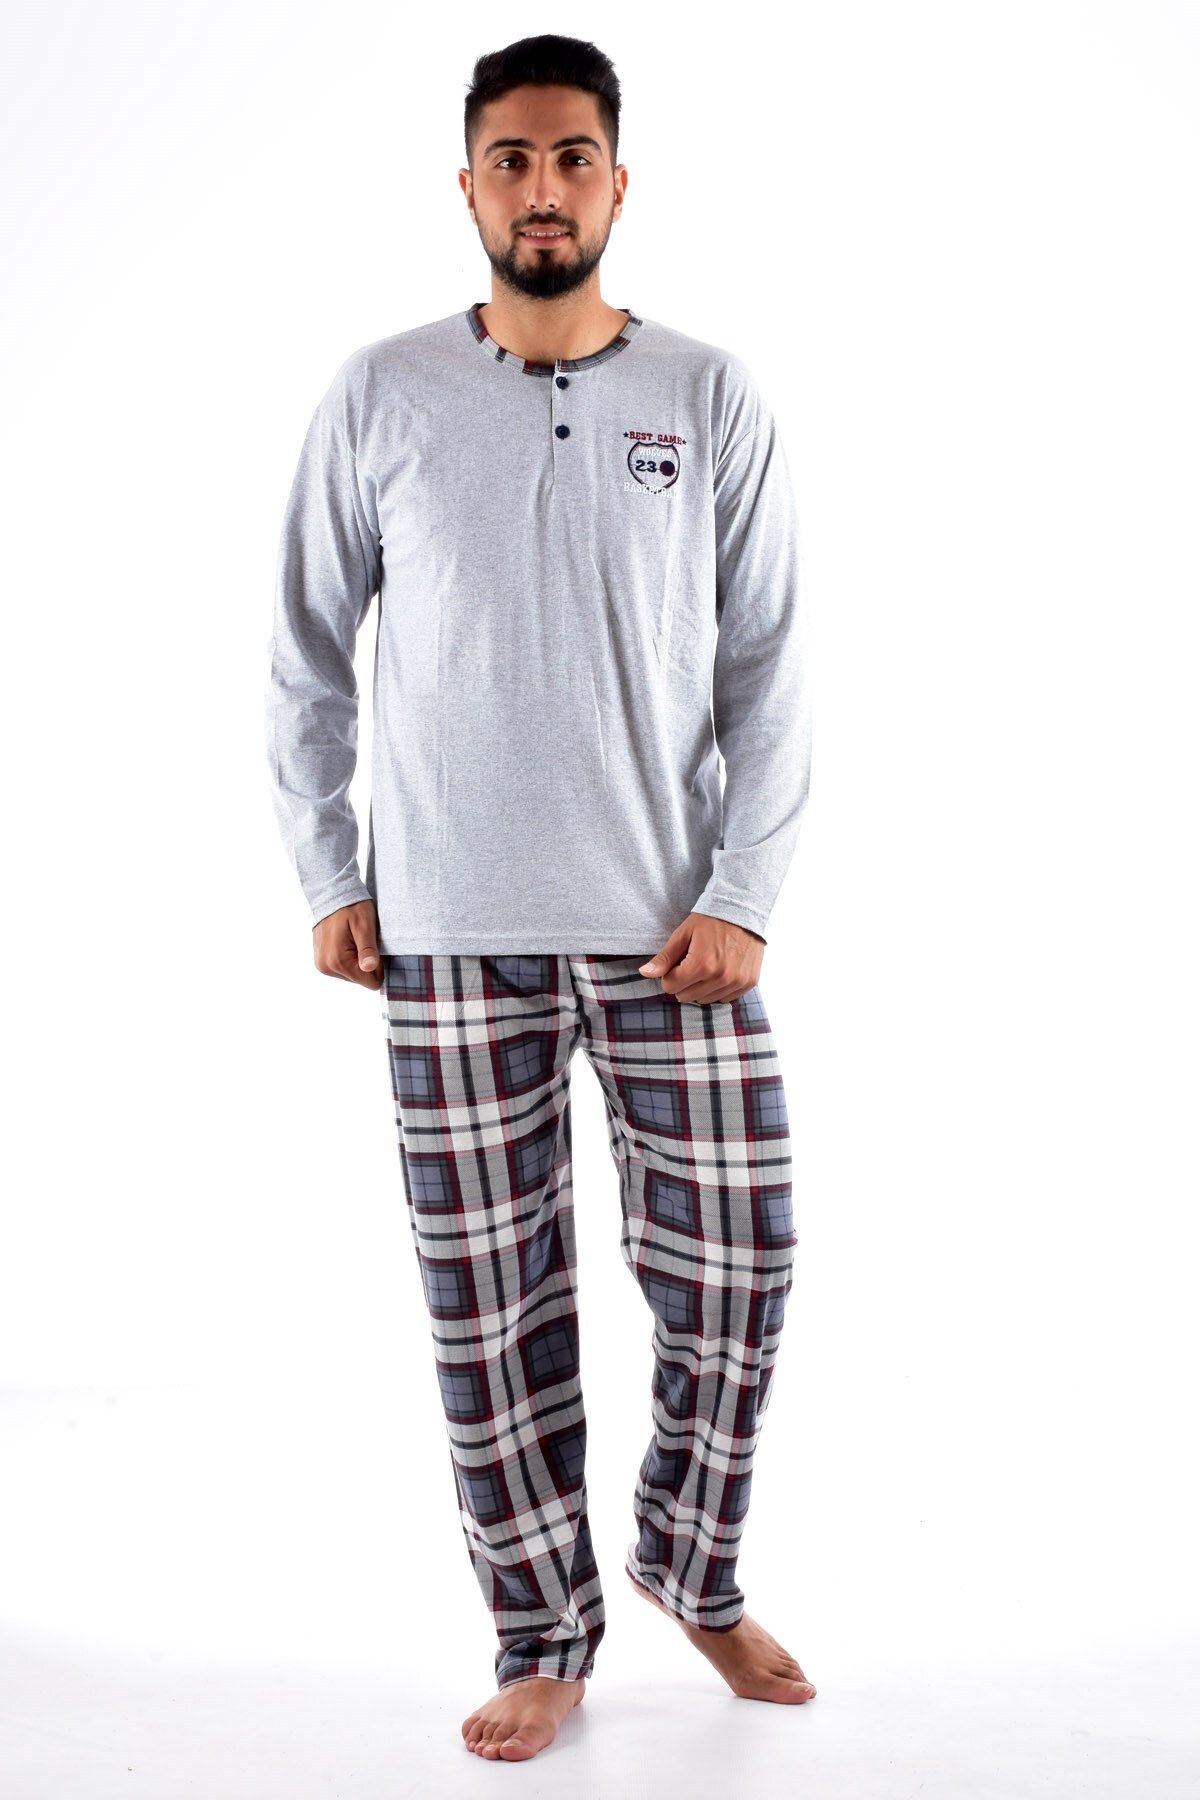 Pemilo Erkek 2105 Uzun Kol Süprem Pijama Takımı Gri